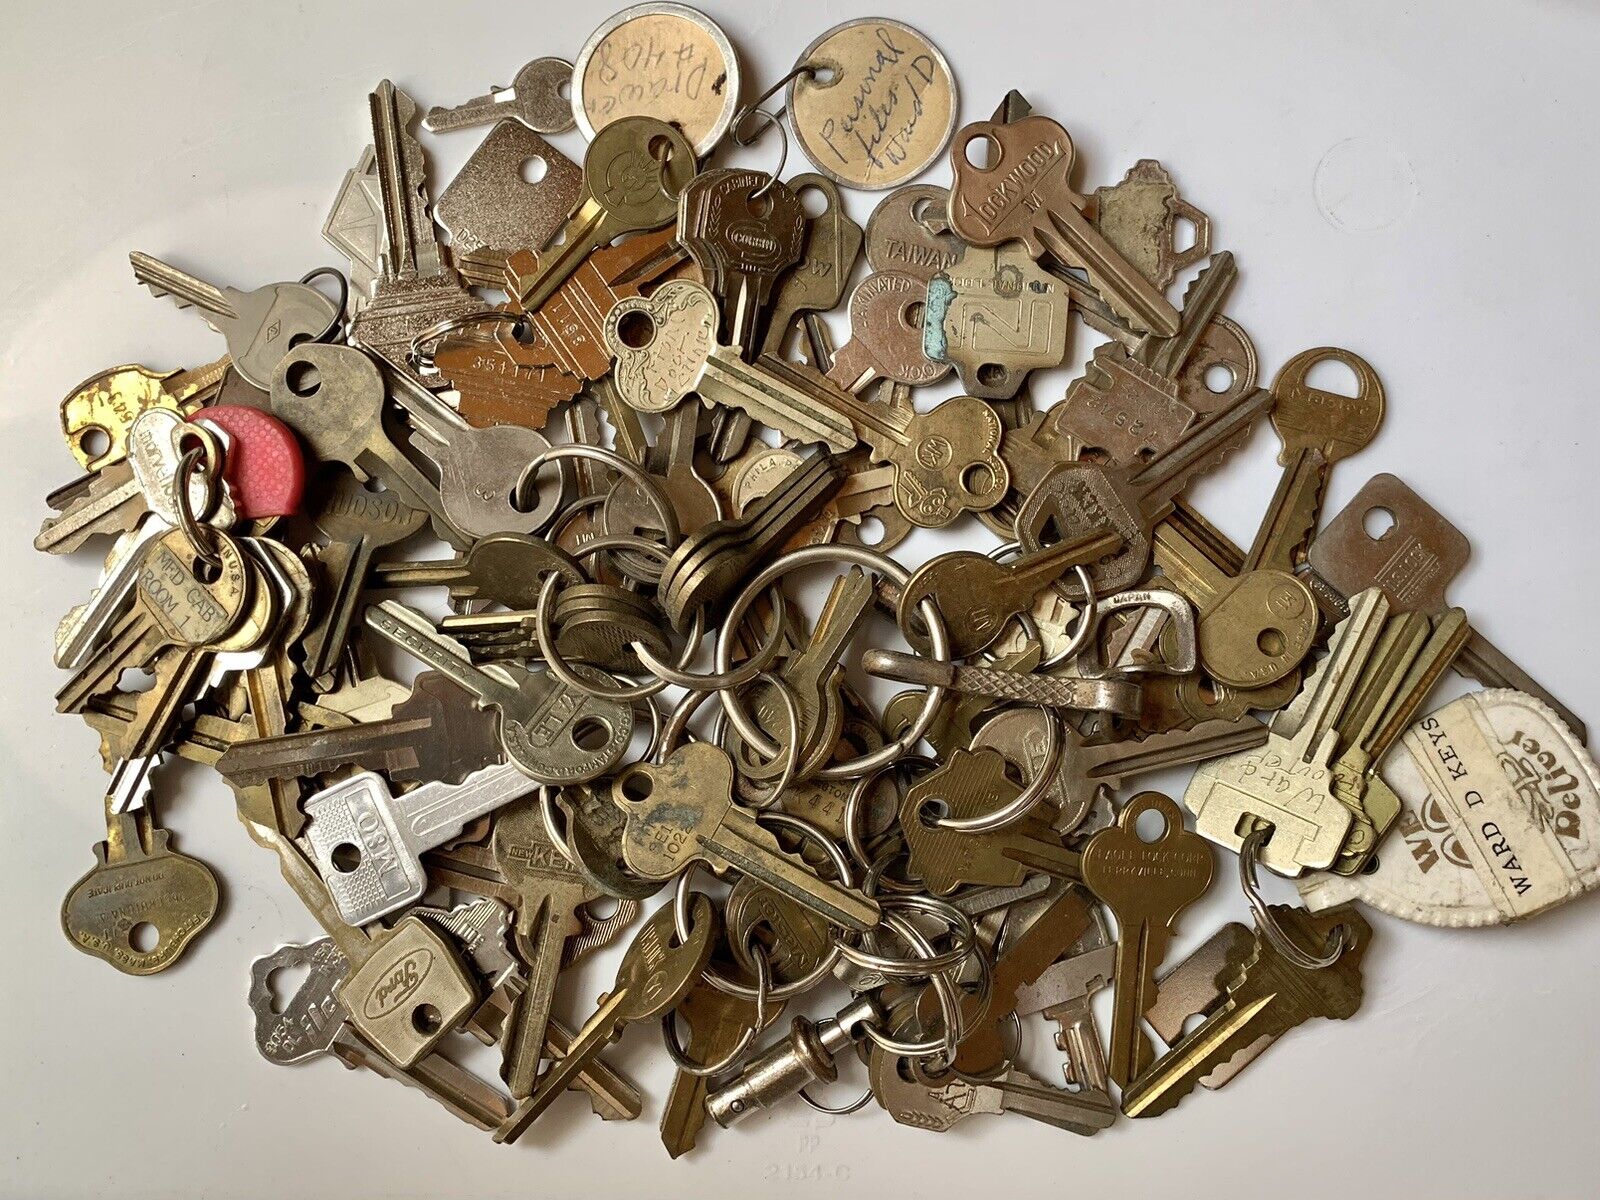 Used Vintage Mixed Keys 2lbs Lot 6